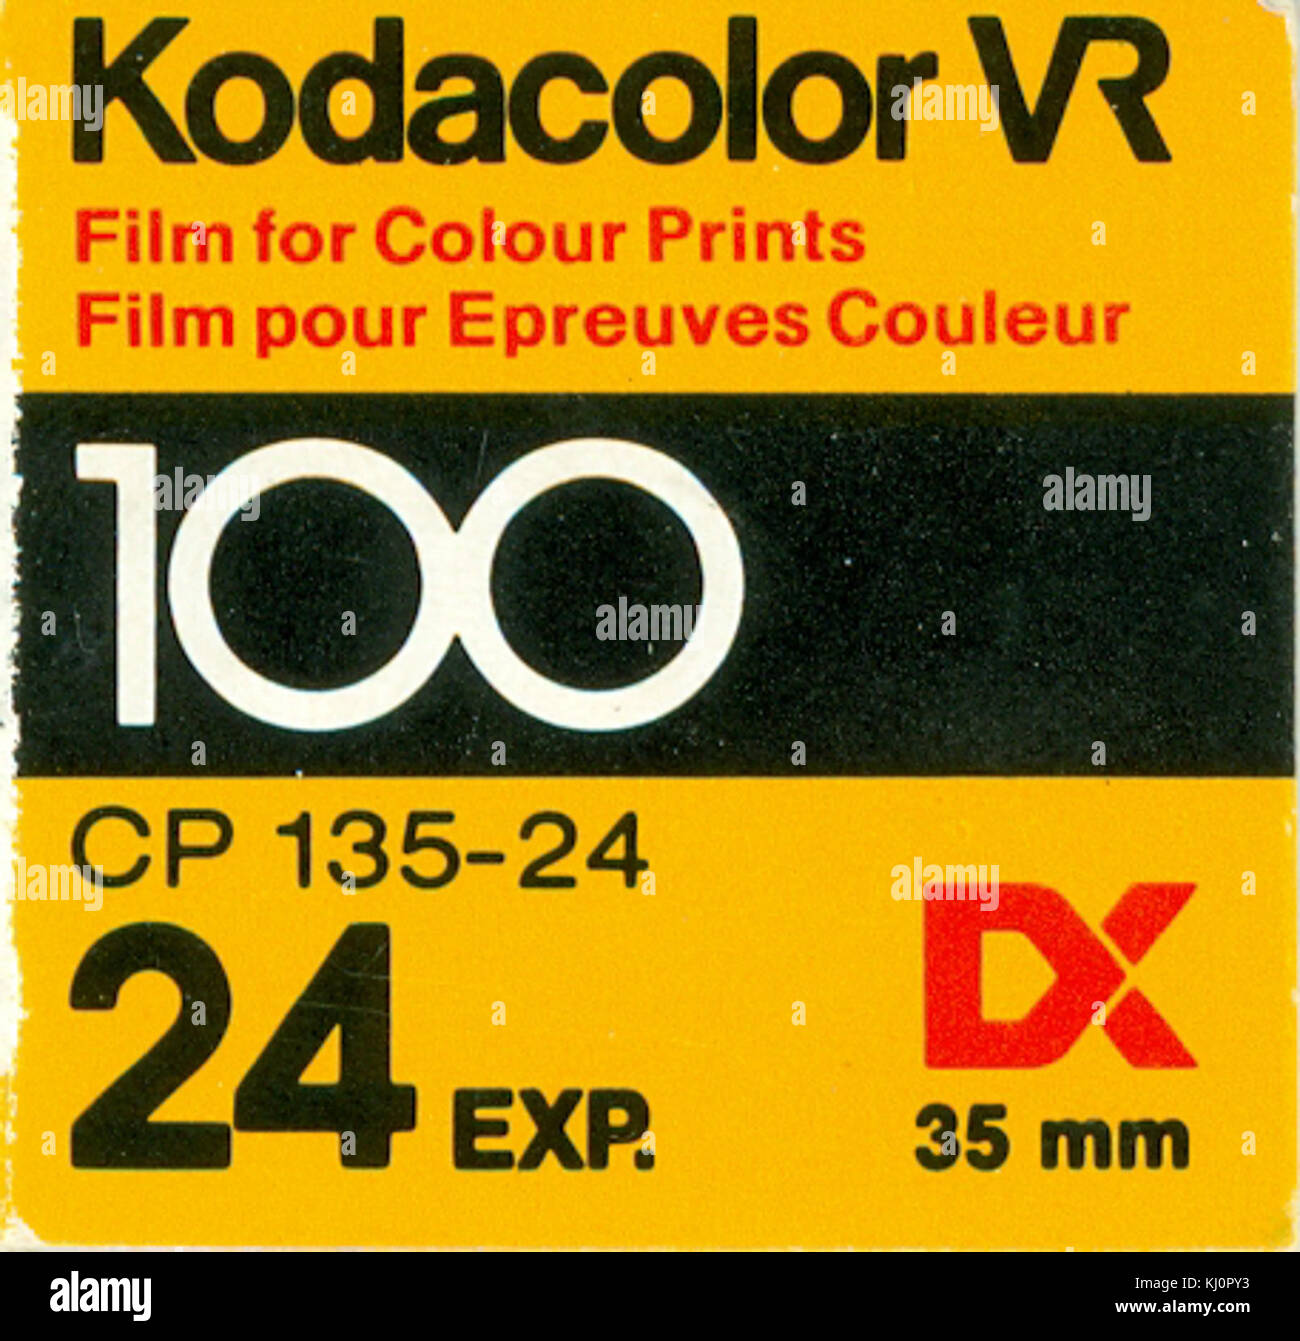 Kodacolor VR 100 carton box Stock Photo